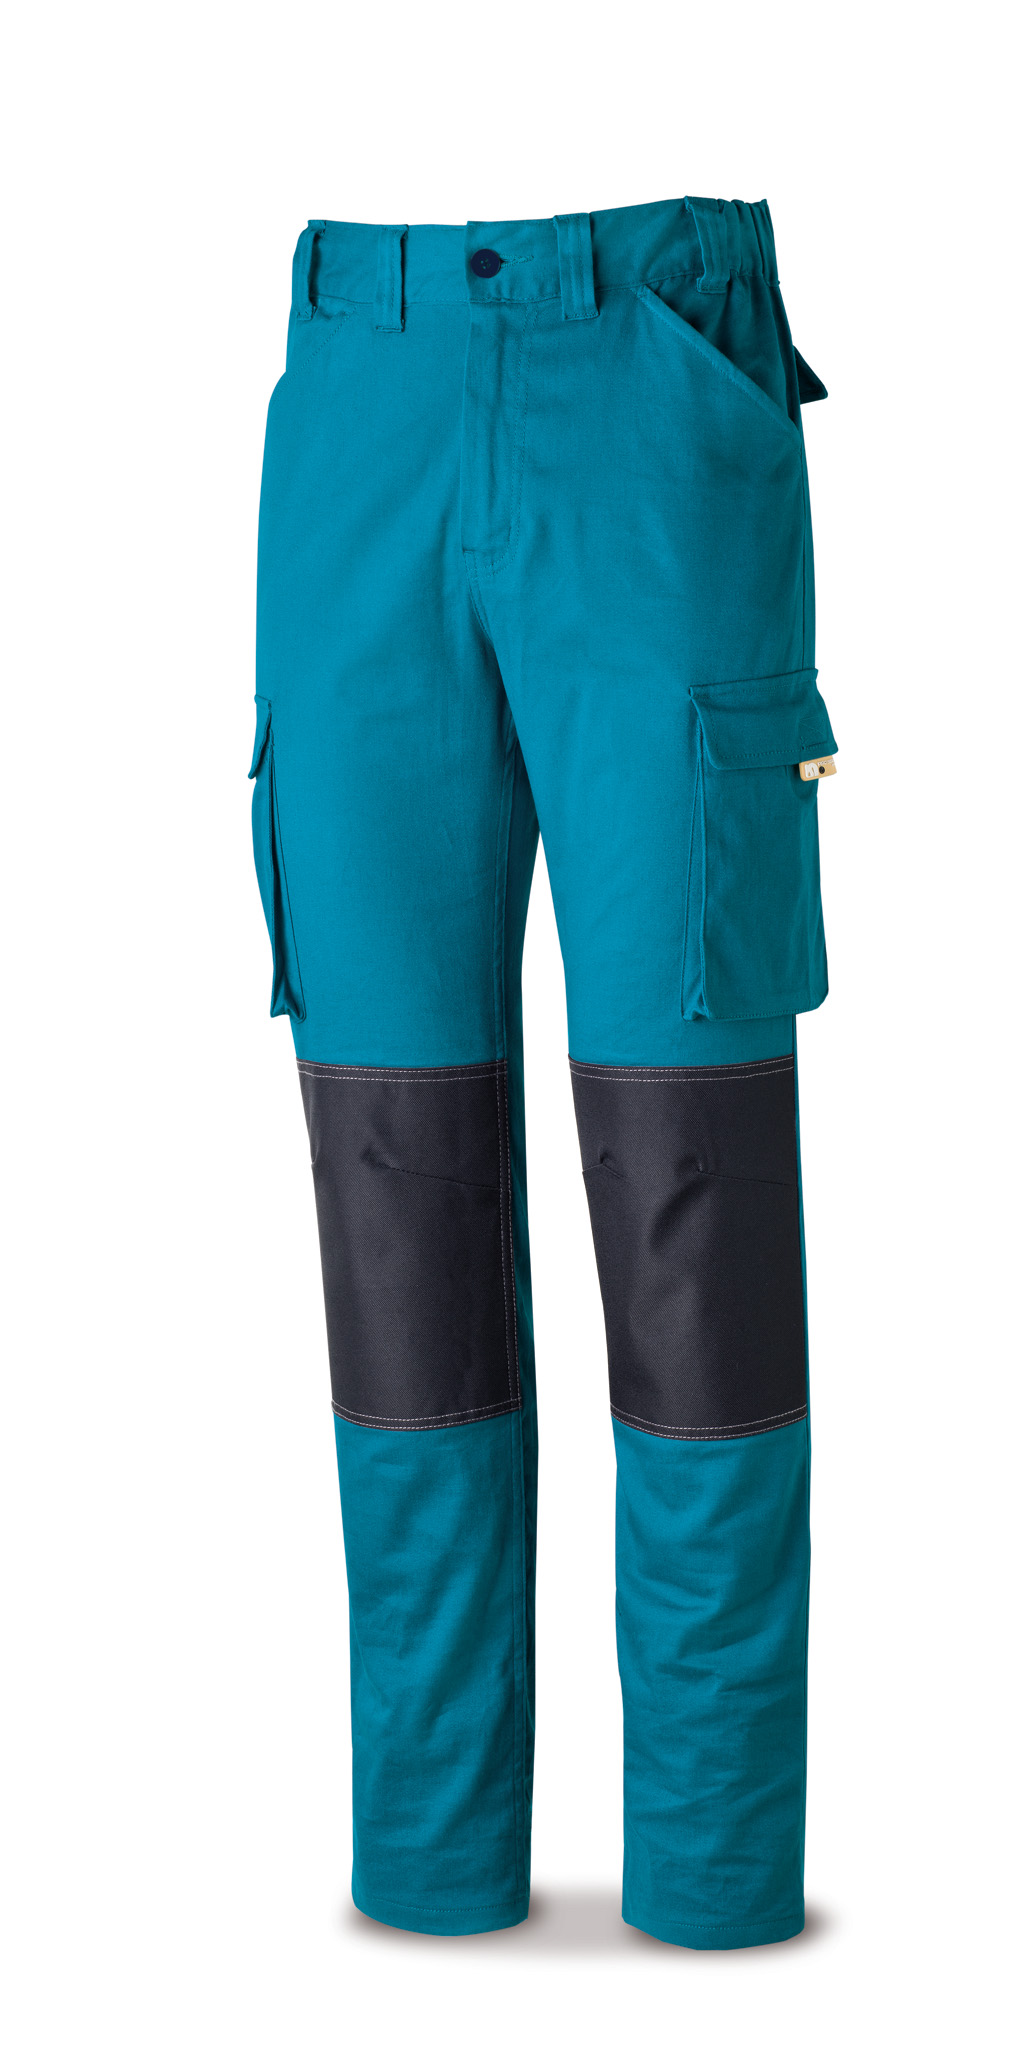 588-PSTRAE Vetements de travail laboral Pro Series Pantalon ÉLASTIQUE coton et élasthane. Coloris bleu marine.